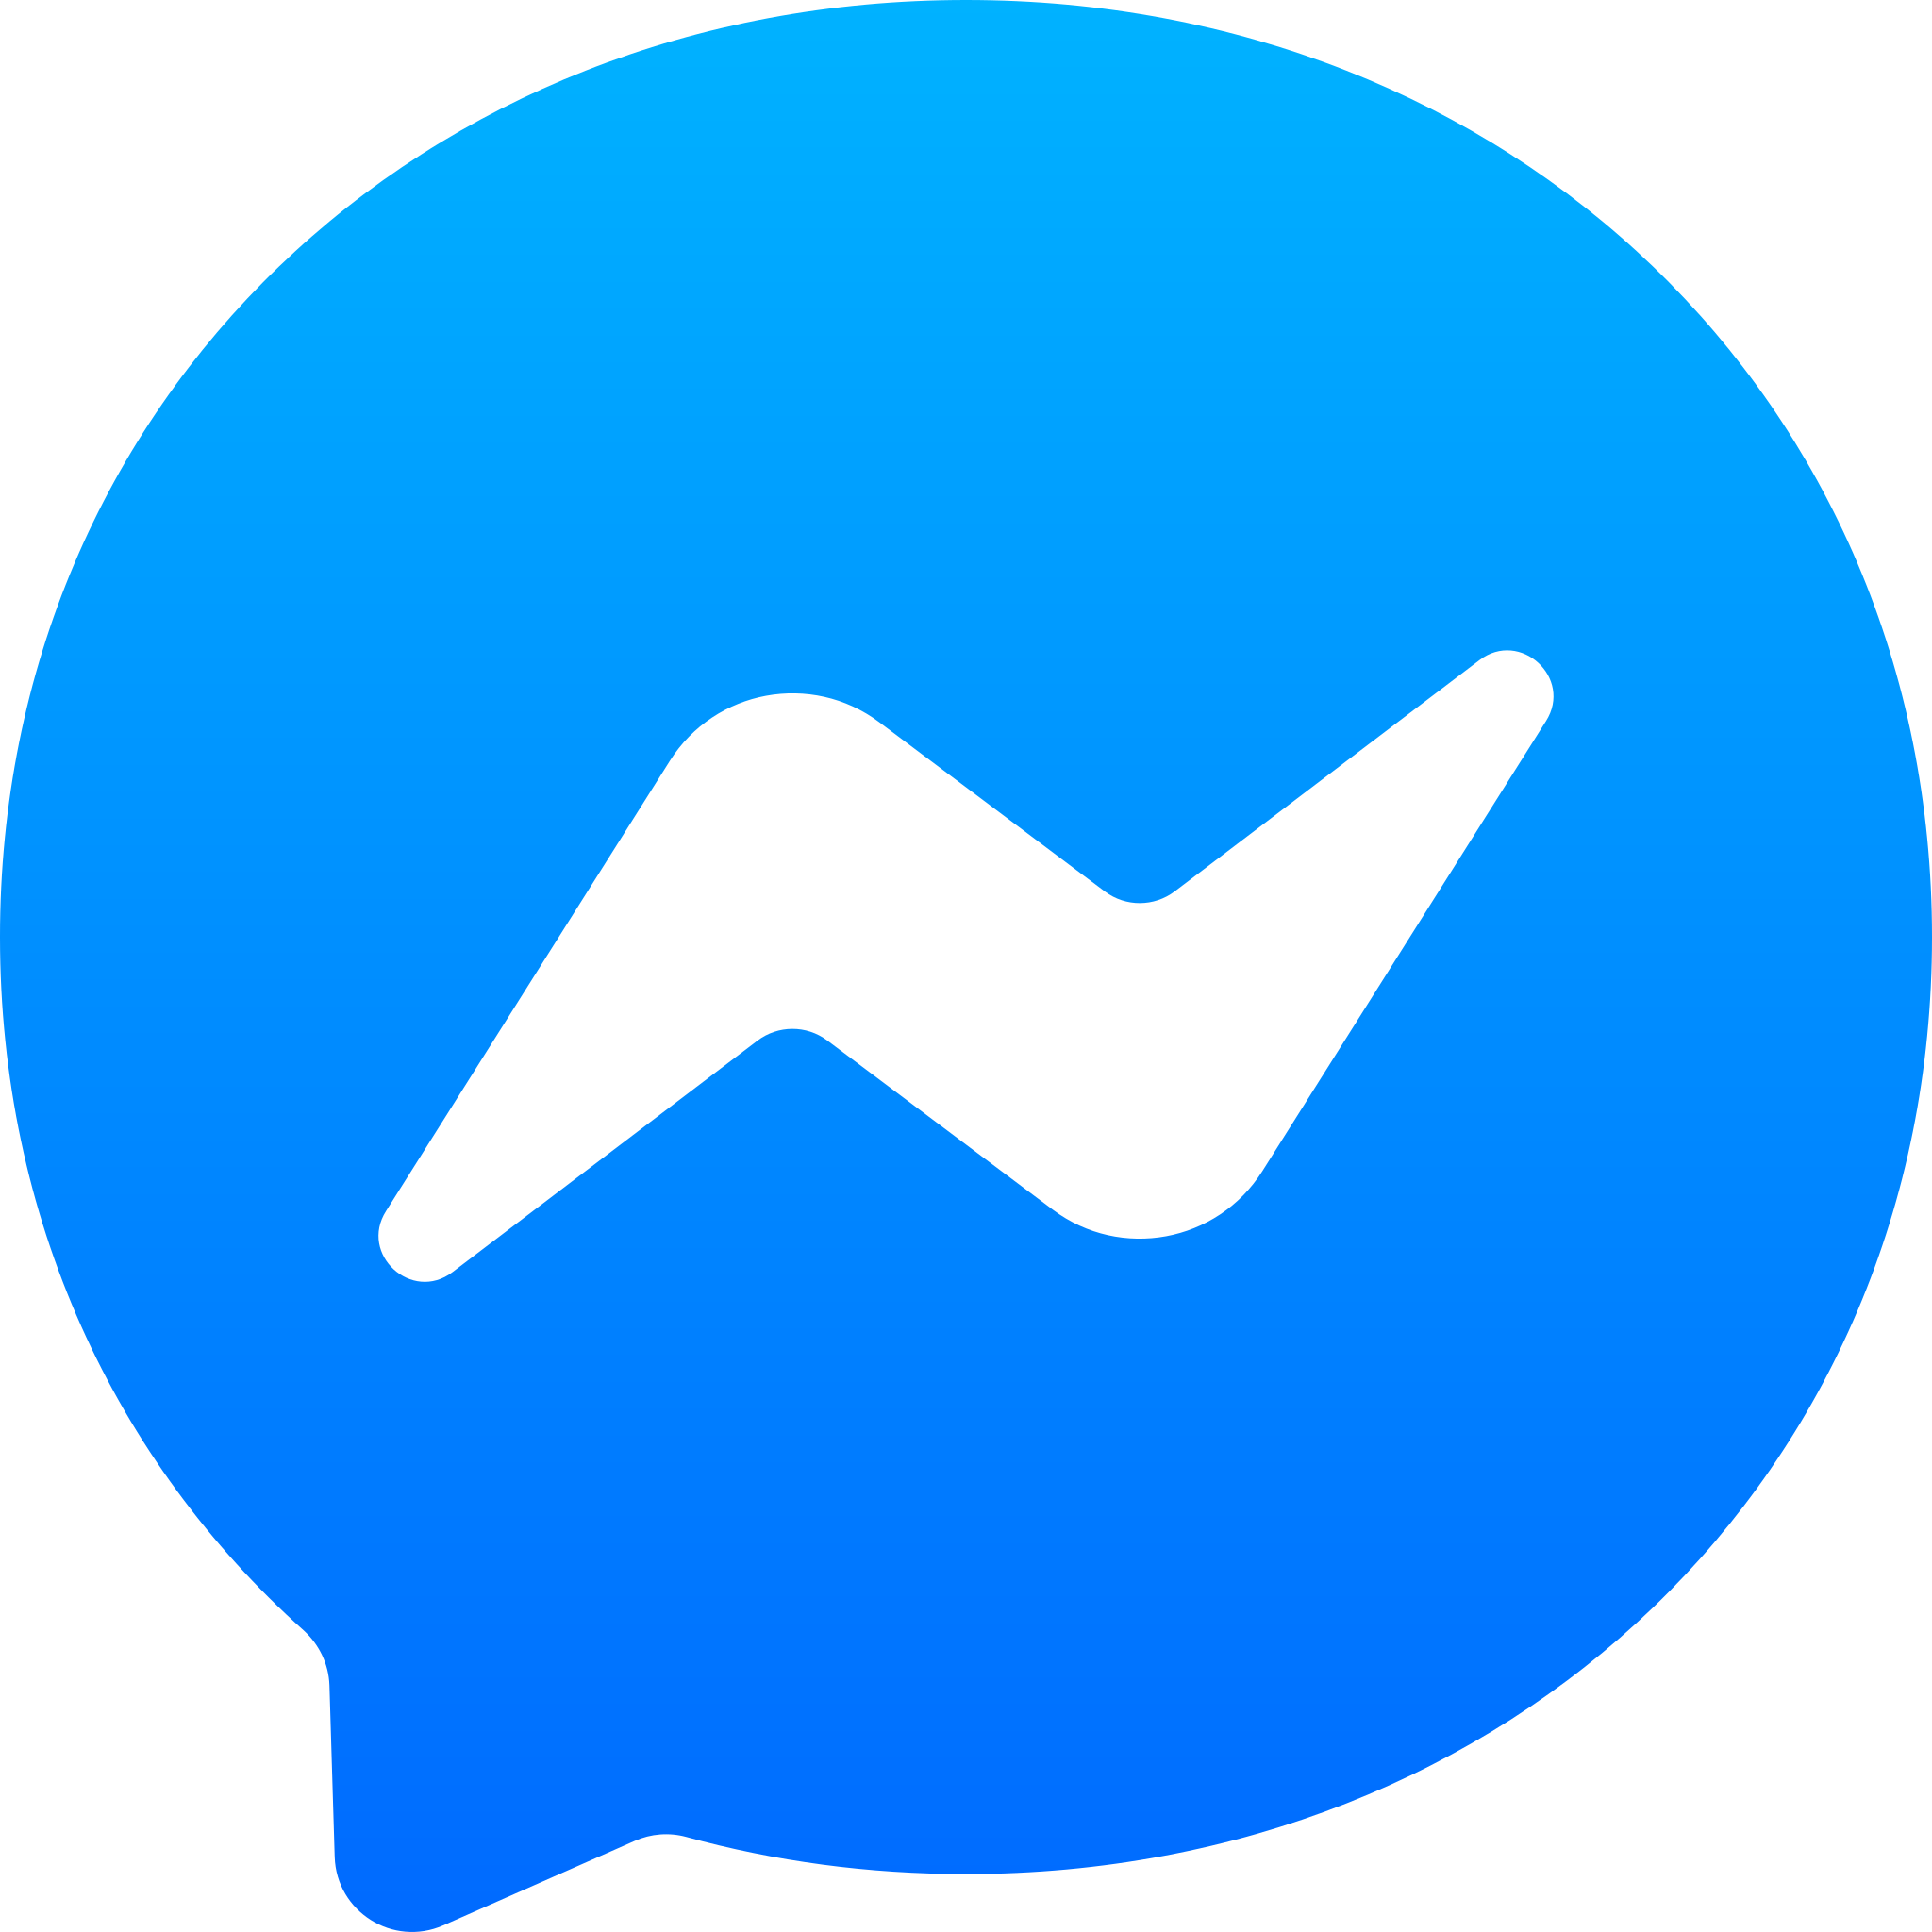 Facebook_Messenger_logo_2018.svg.png